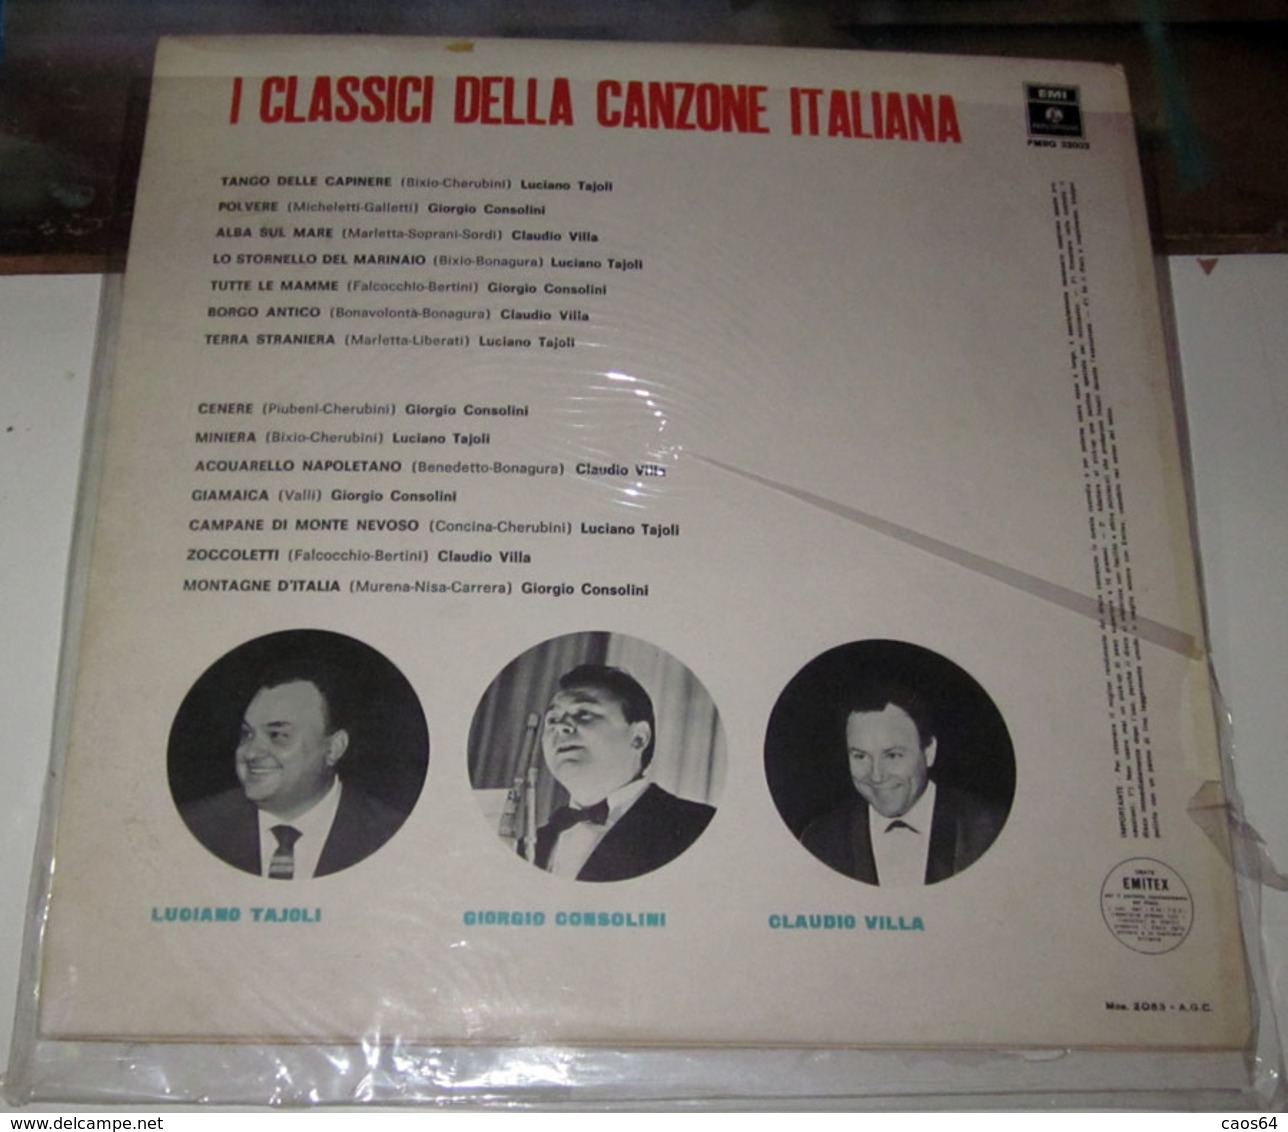 LUCIANO TAJOLI GIORGIO CONSOLINI CLAUDIO VILLA I CLASSICI DELLA CANZONE ITALIANA - Sonstige - Italienische Musik